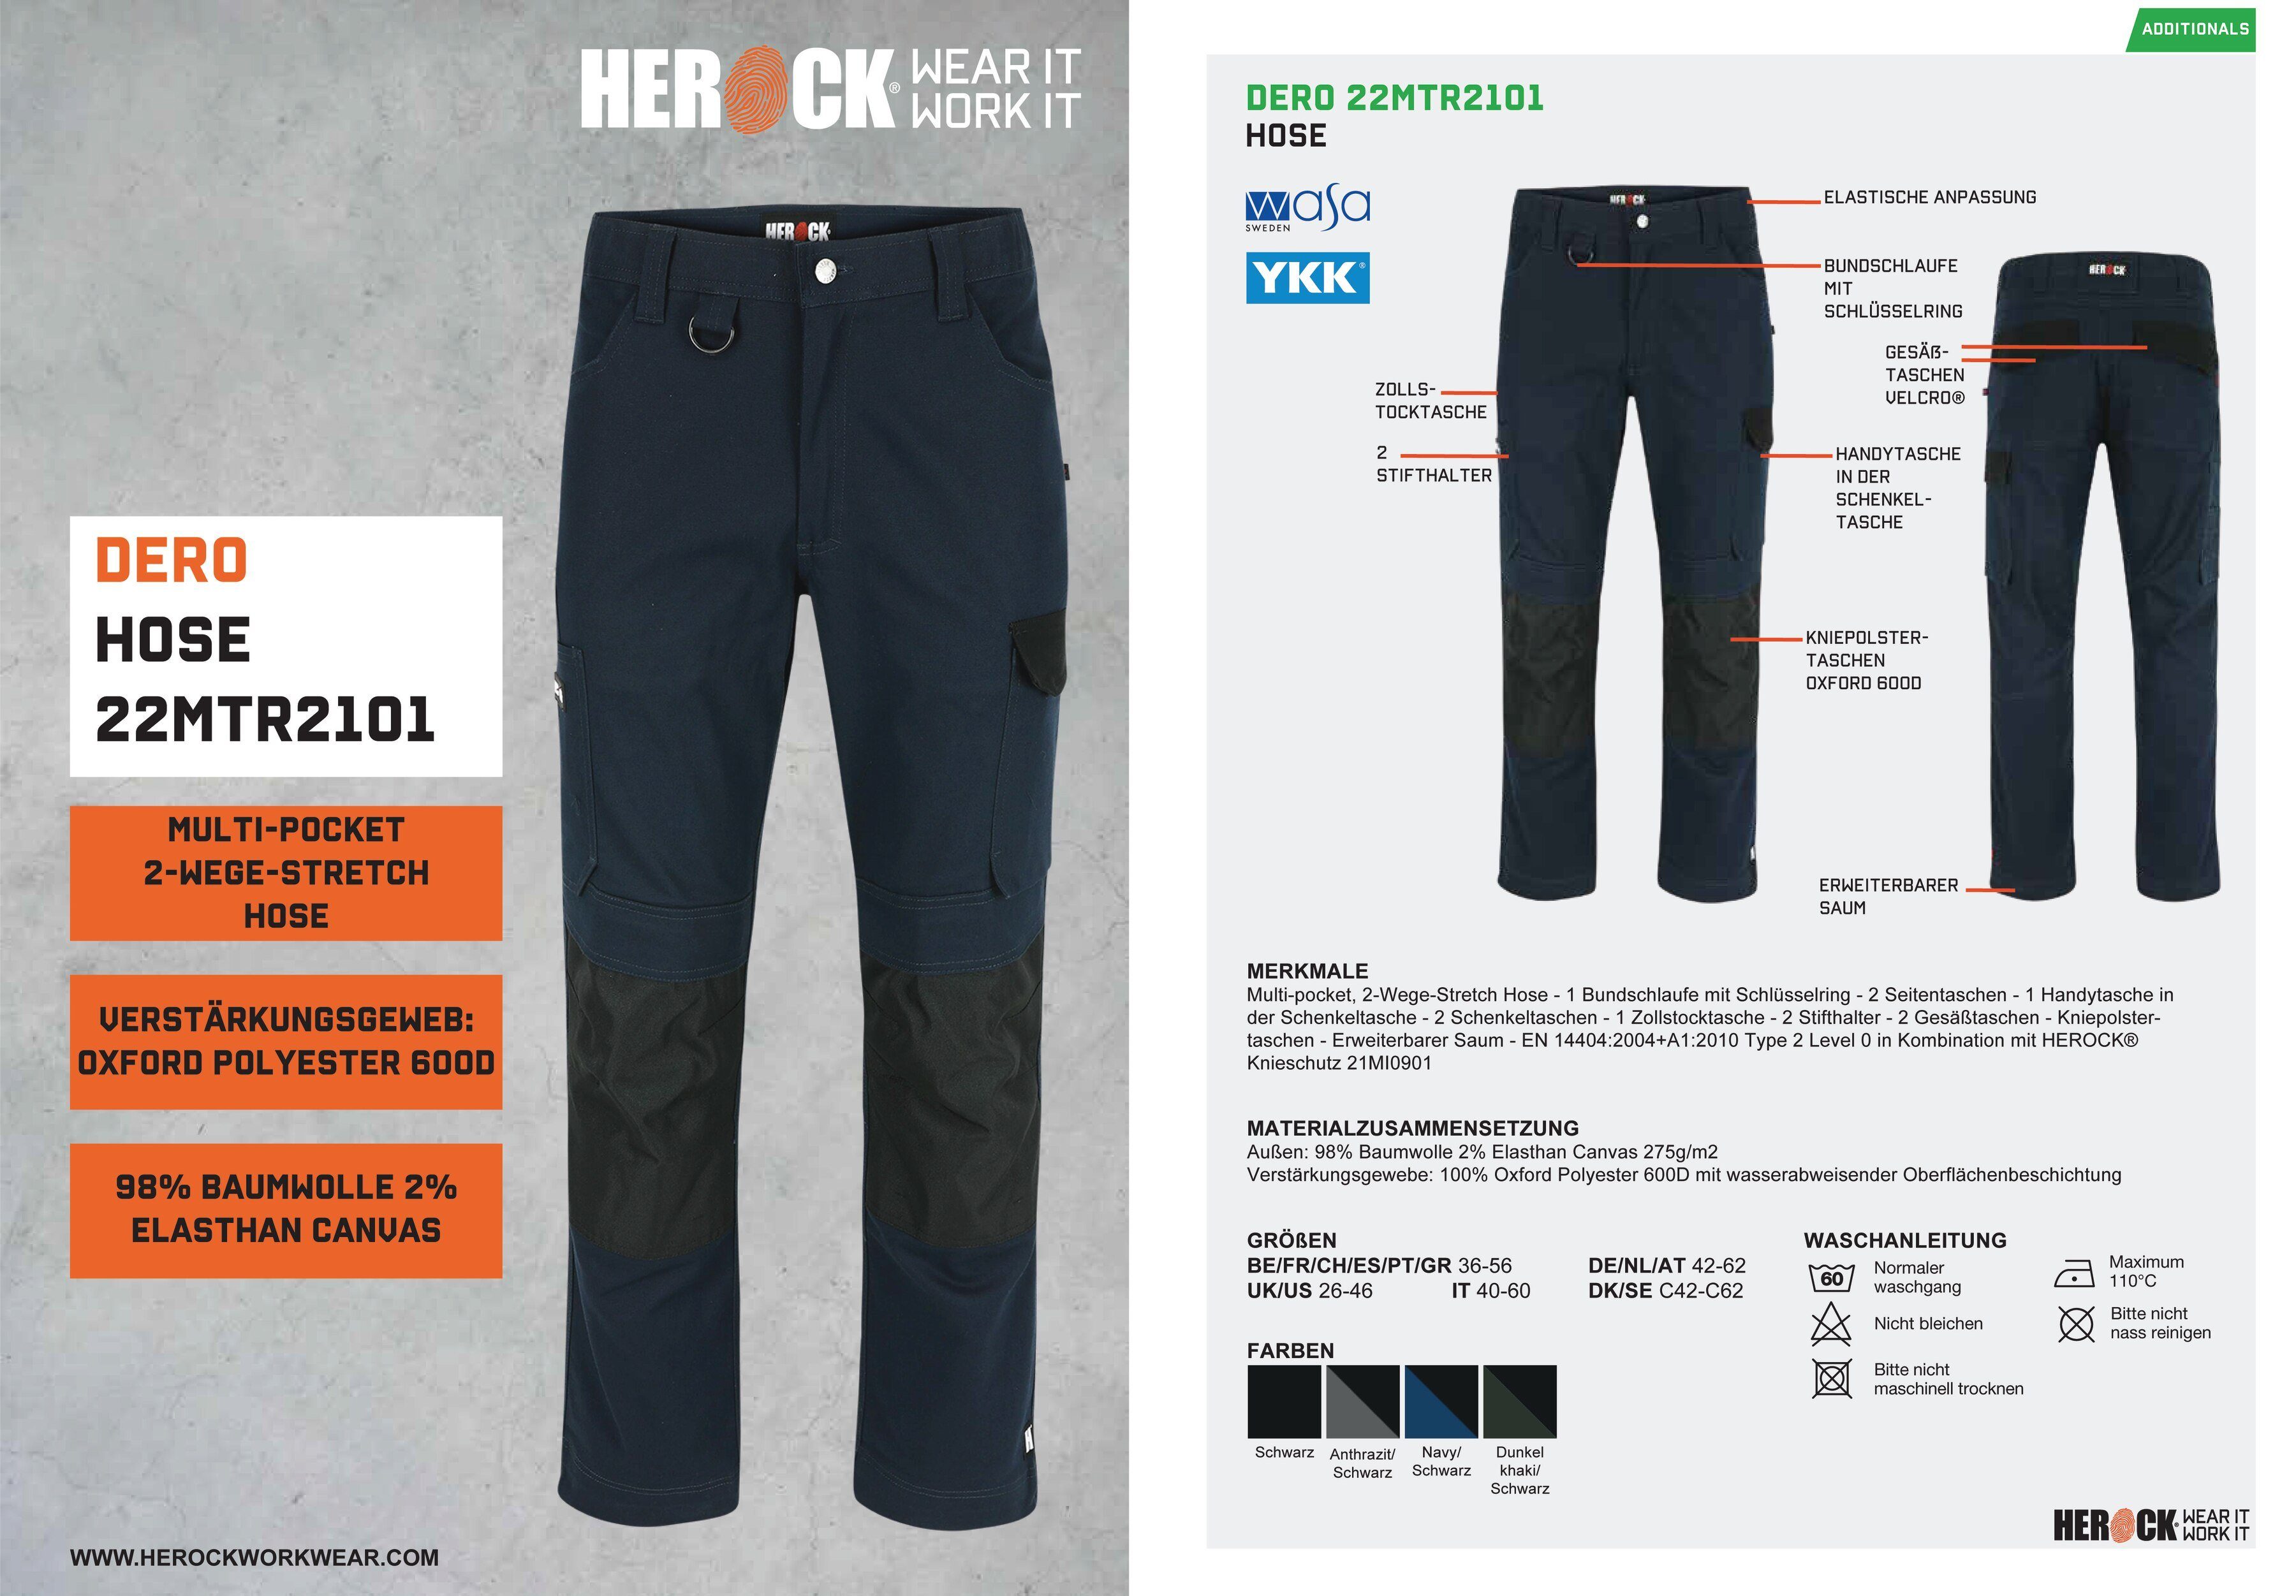 Herock Arbeitshose DERO Slim Fit wasserabweisend Passform, Multi-Pocket, marine 2-Wege-Stretch